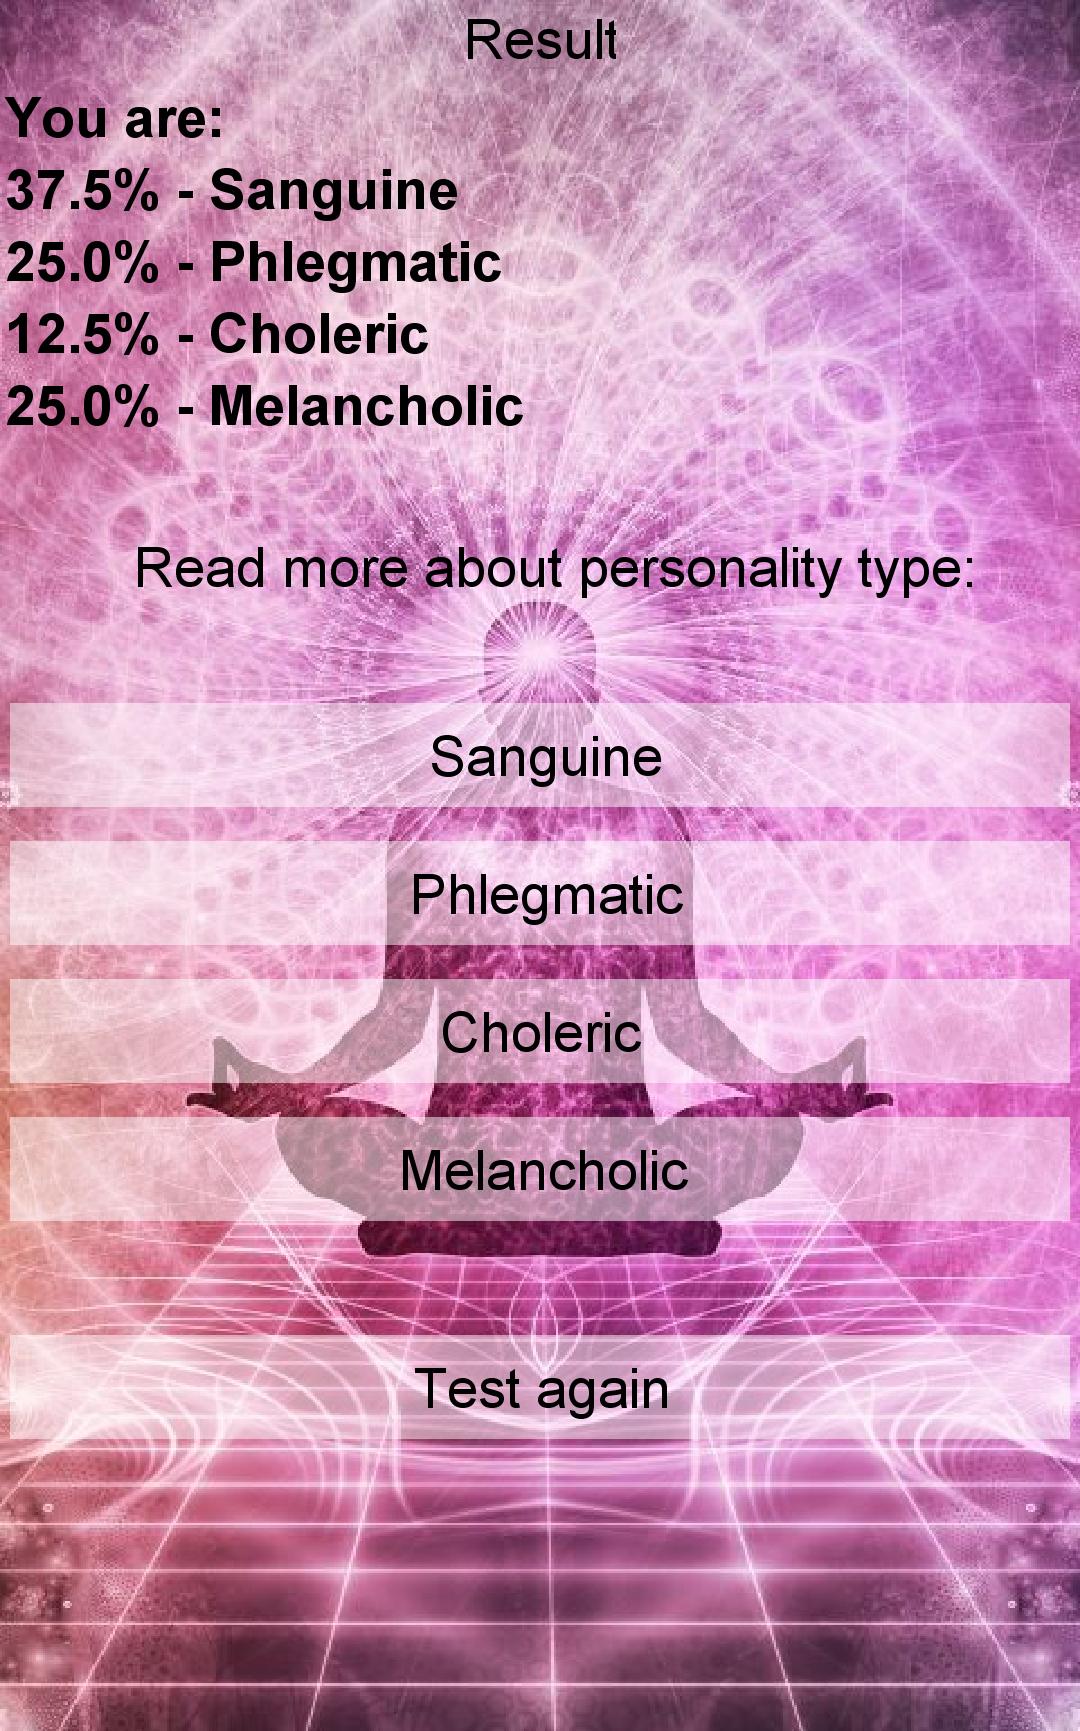 Personality sanguine choleric melancholic phlegmatic test